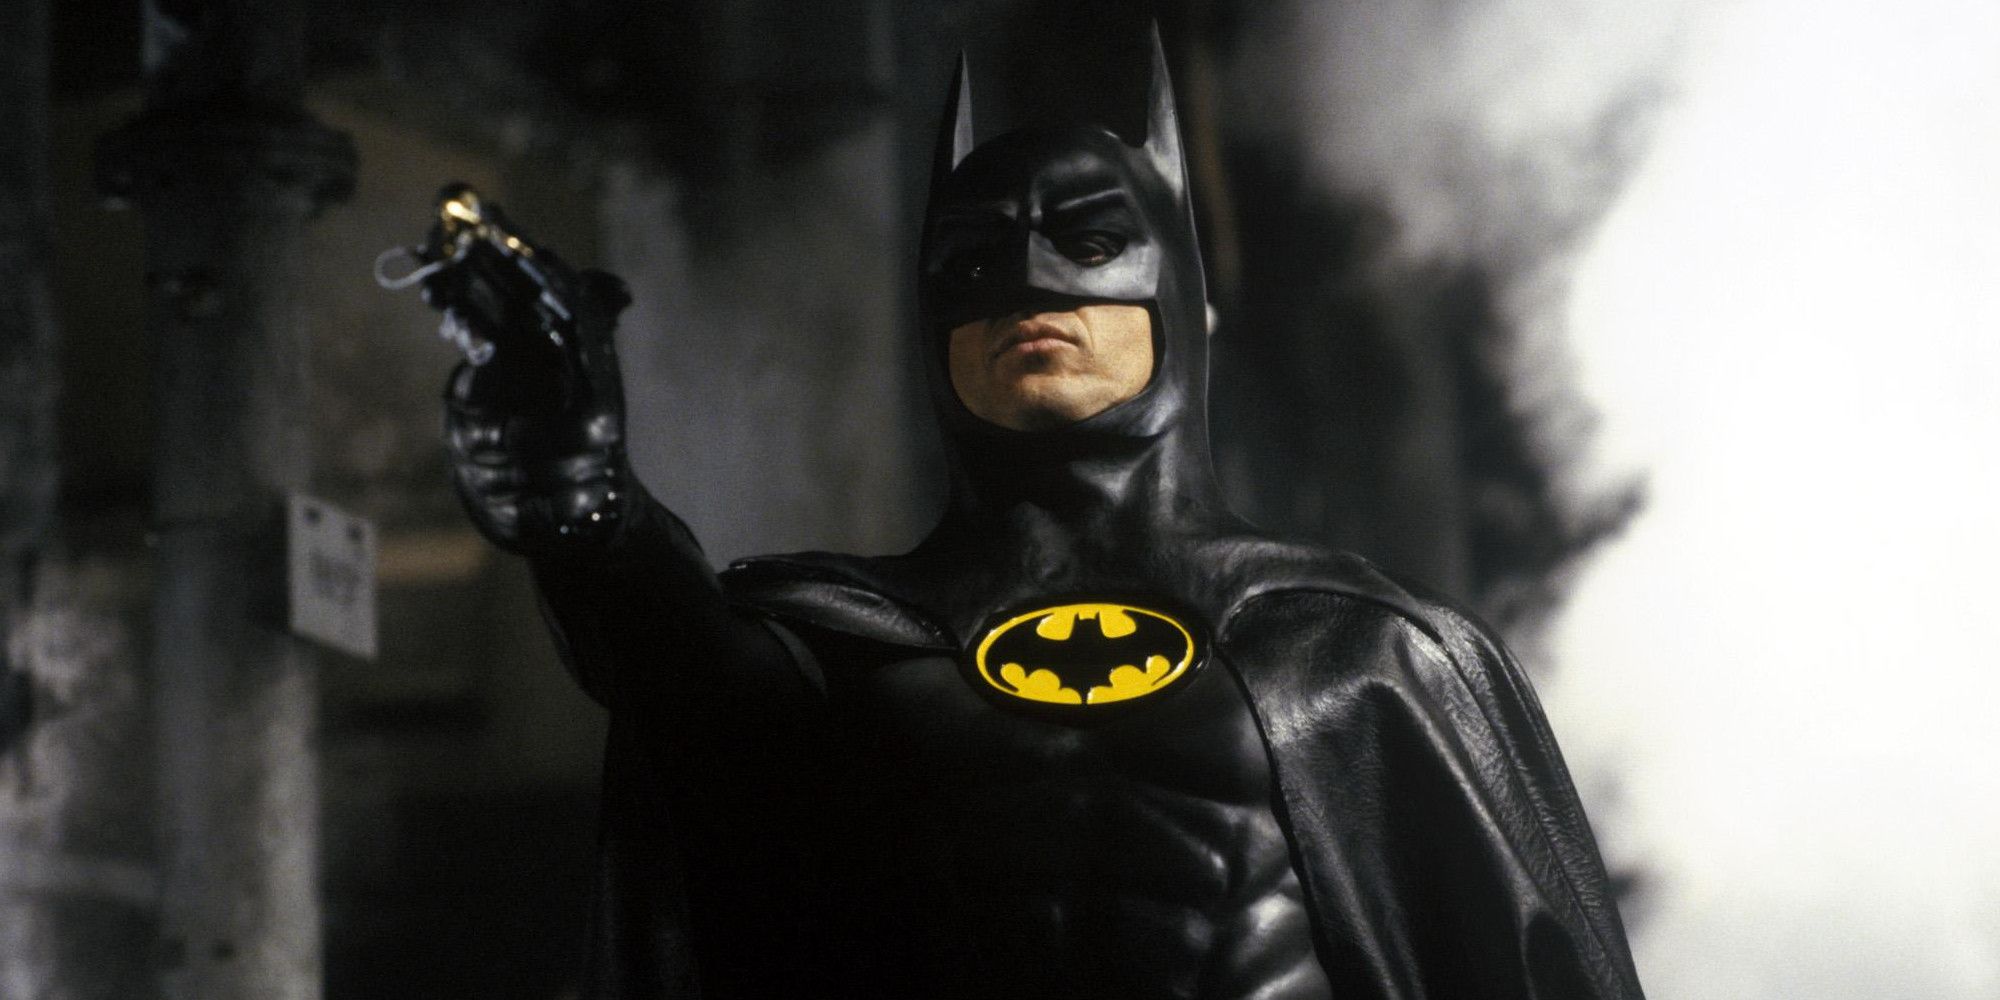 Batman aims his grappling gun in Batman 1989